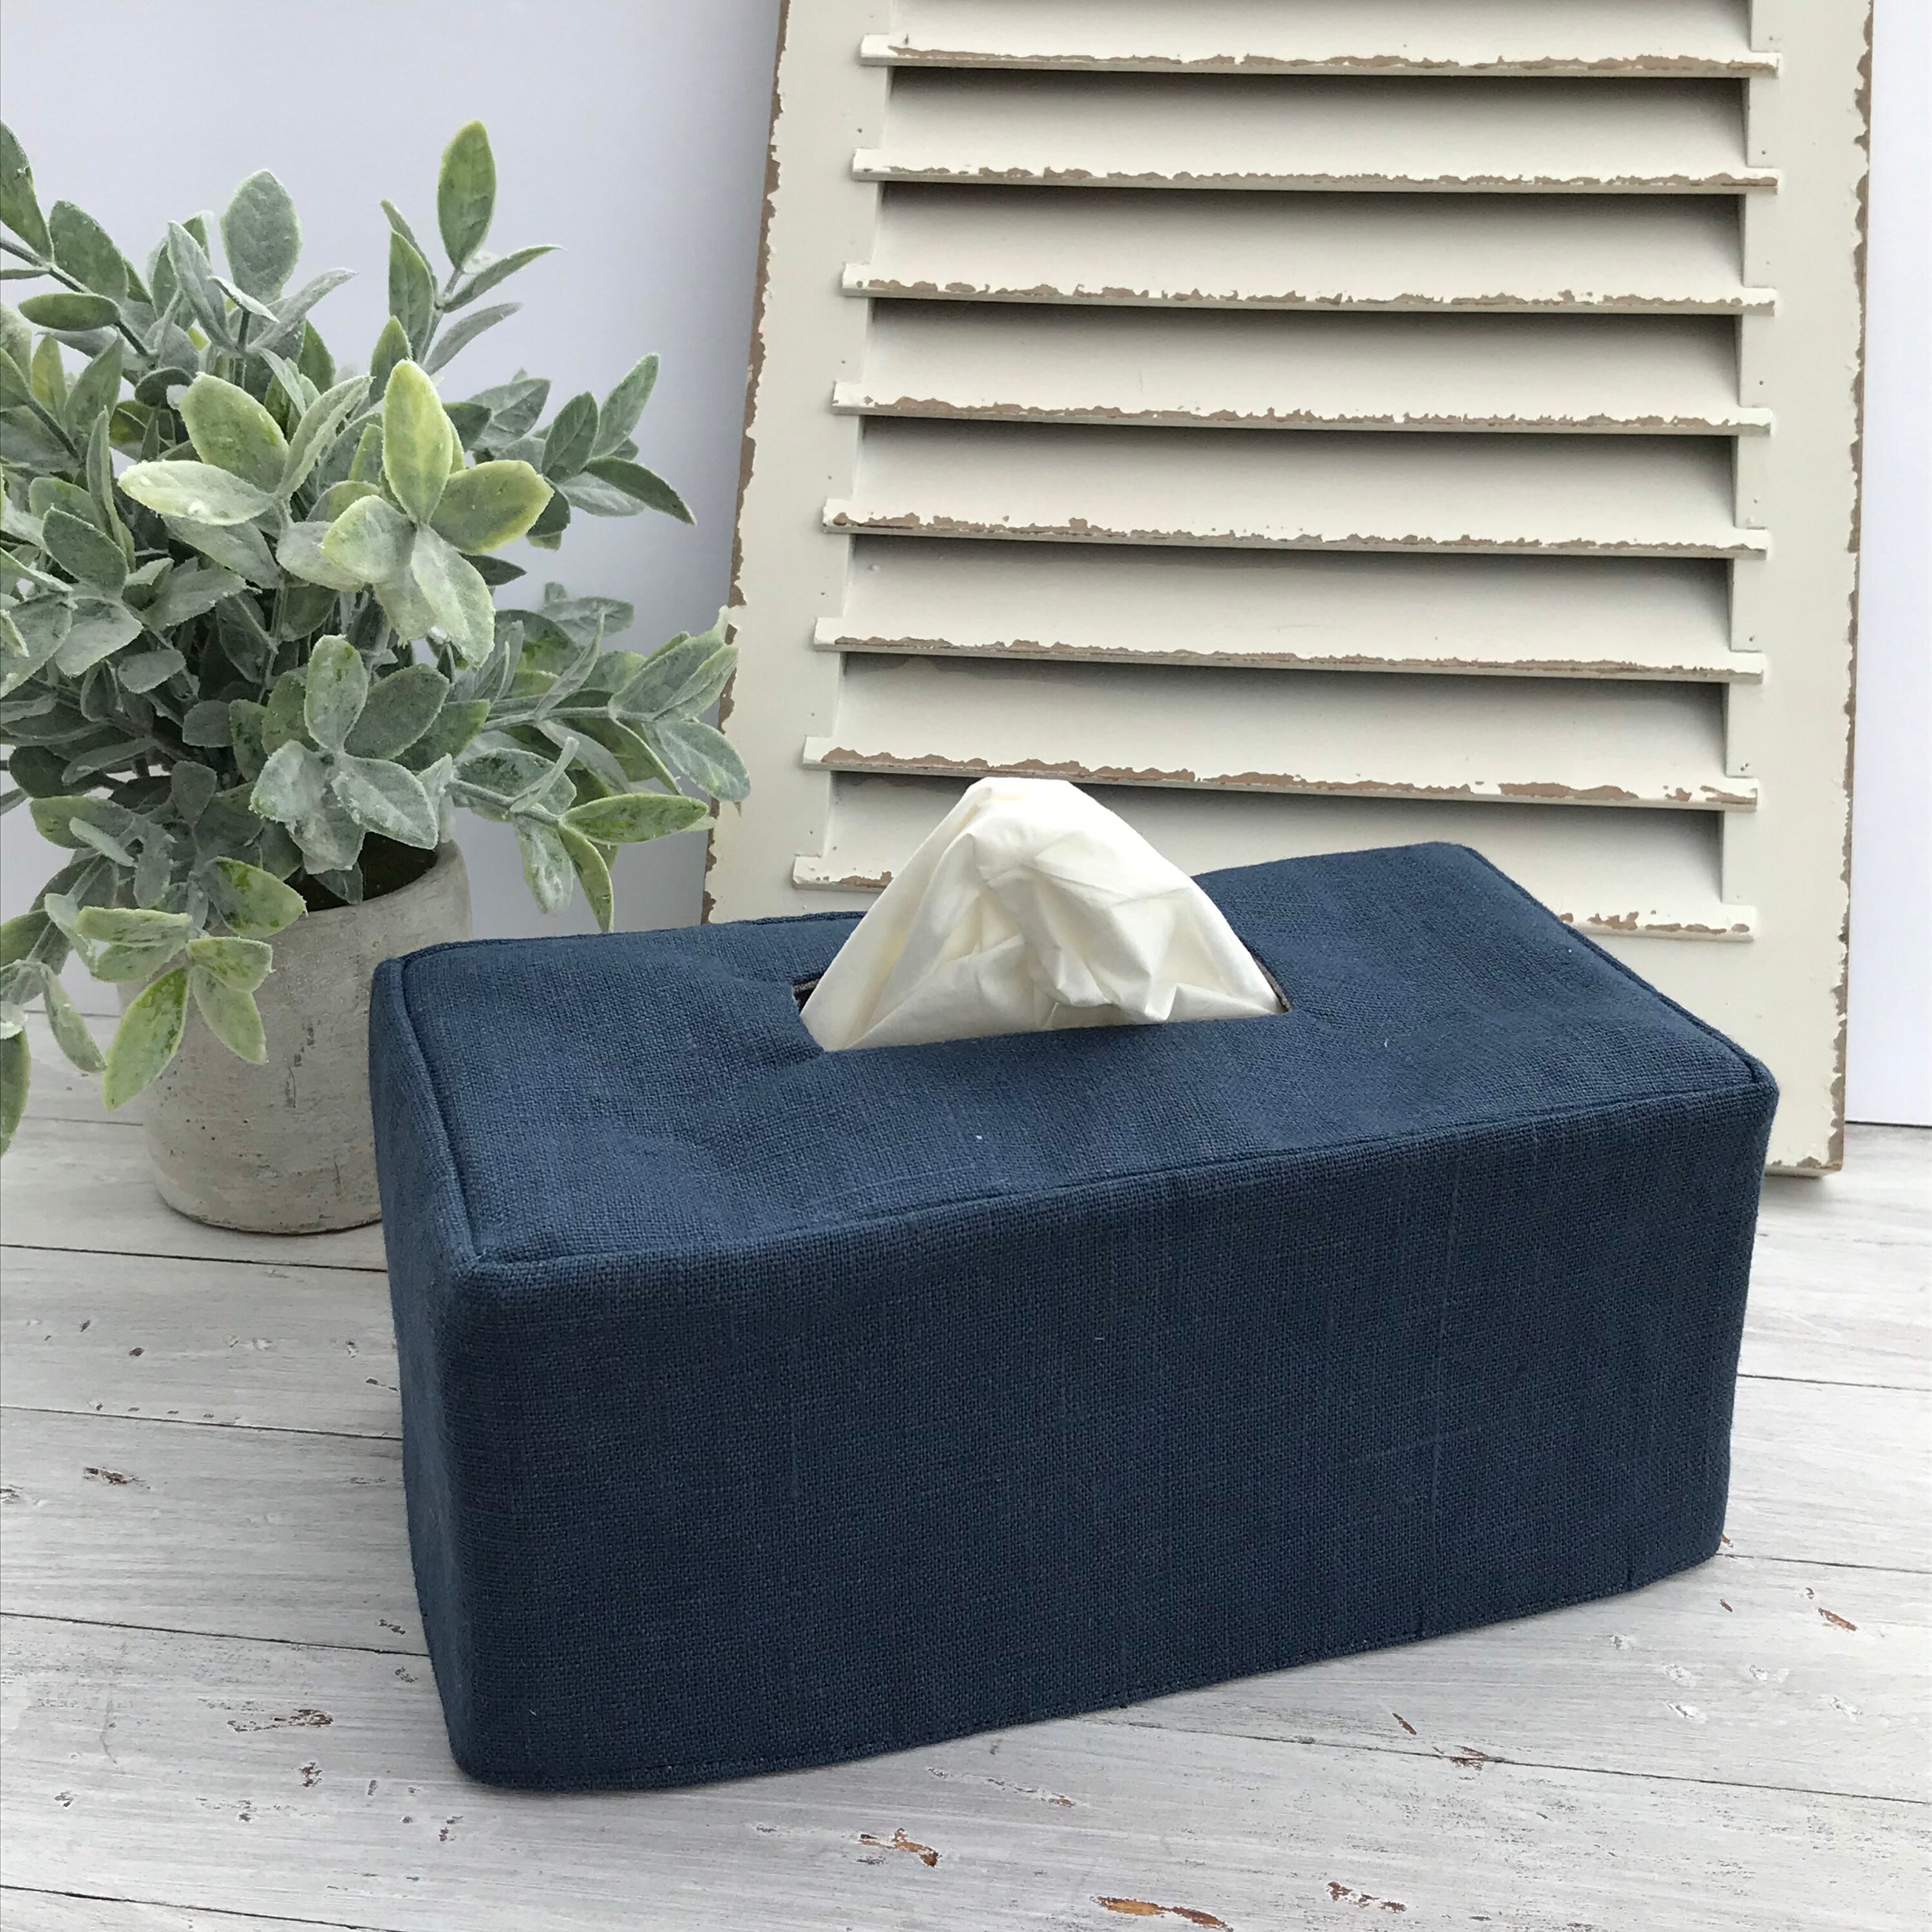 Reversible Linen Tissue Box Cover Rectangular Tissue Box Cover